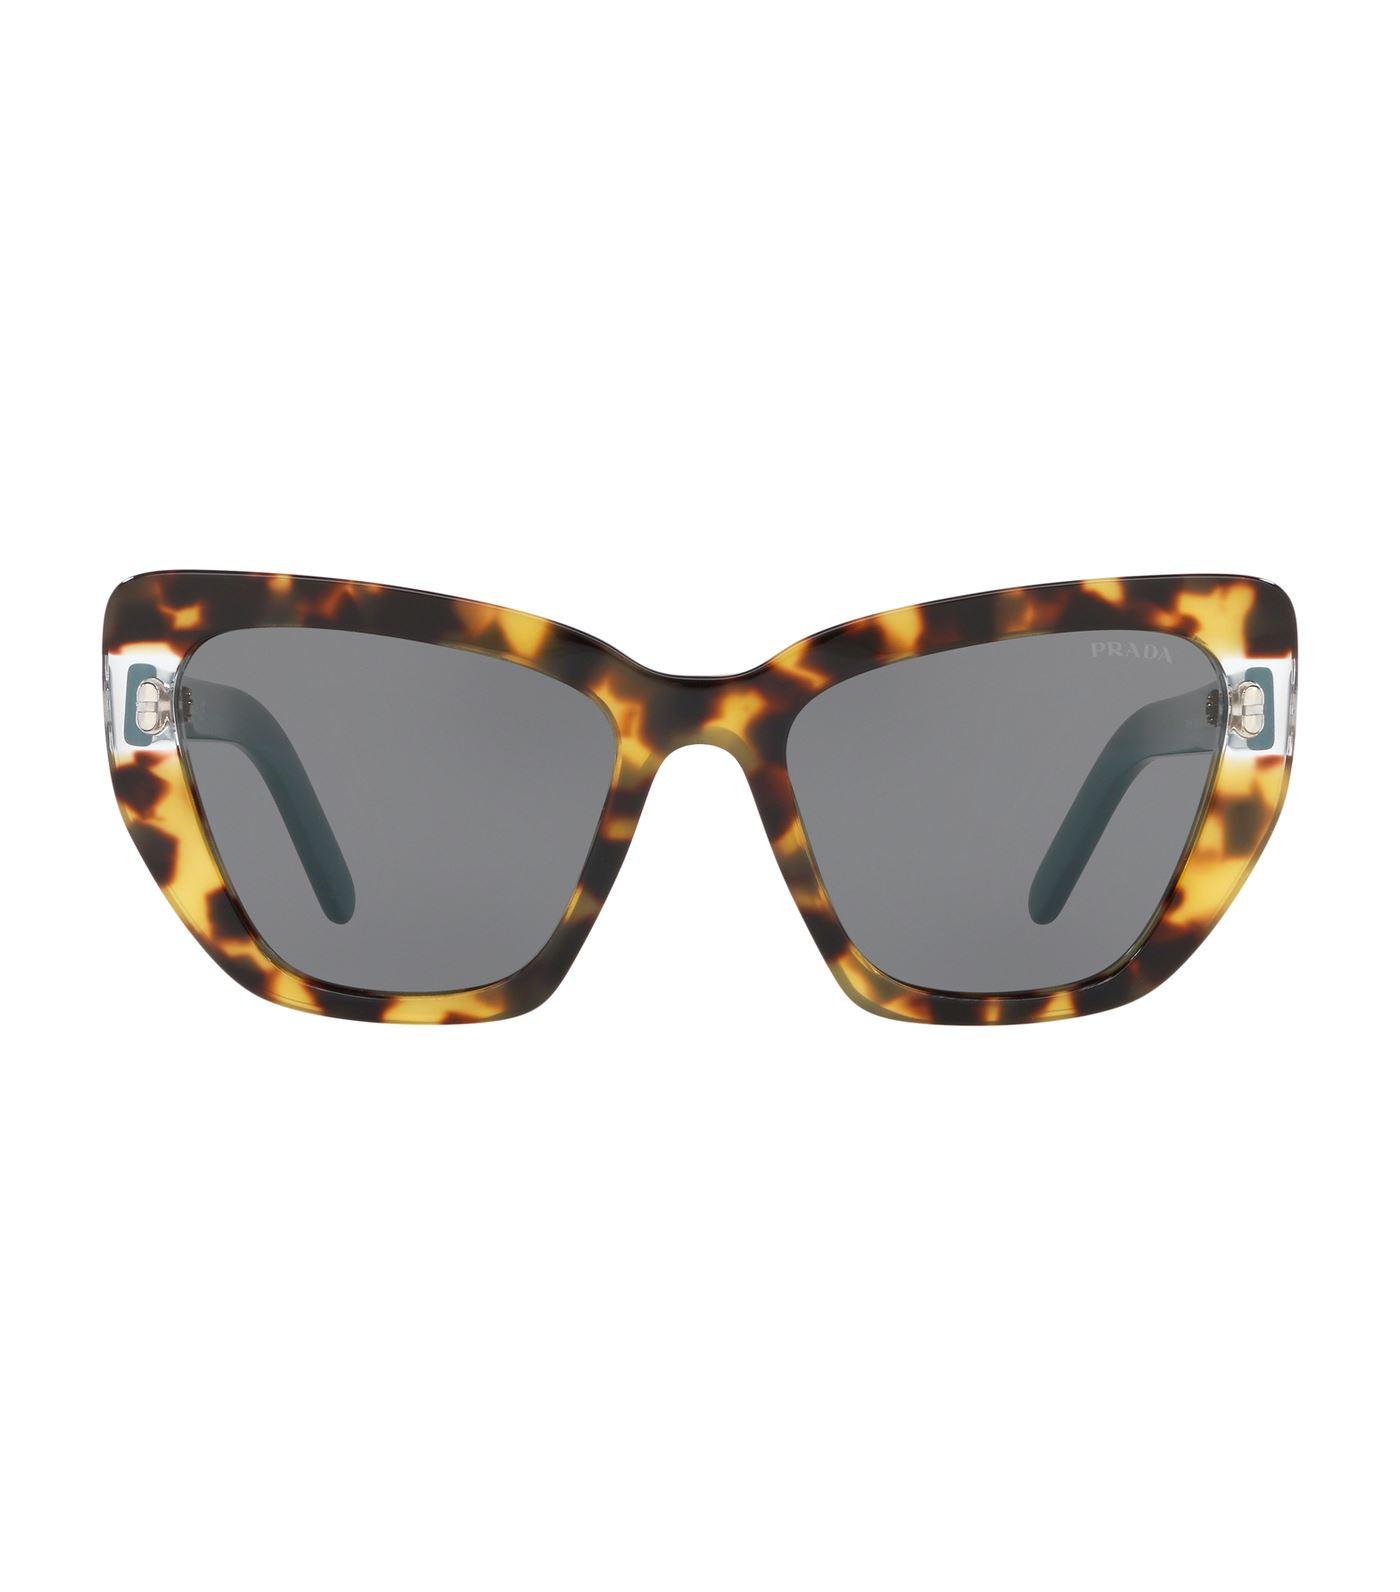 Prada Tortoiseshell Cat-eye Sunglasses in Brown - Lyst